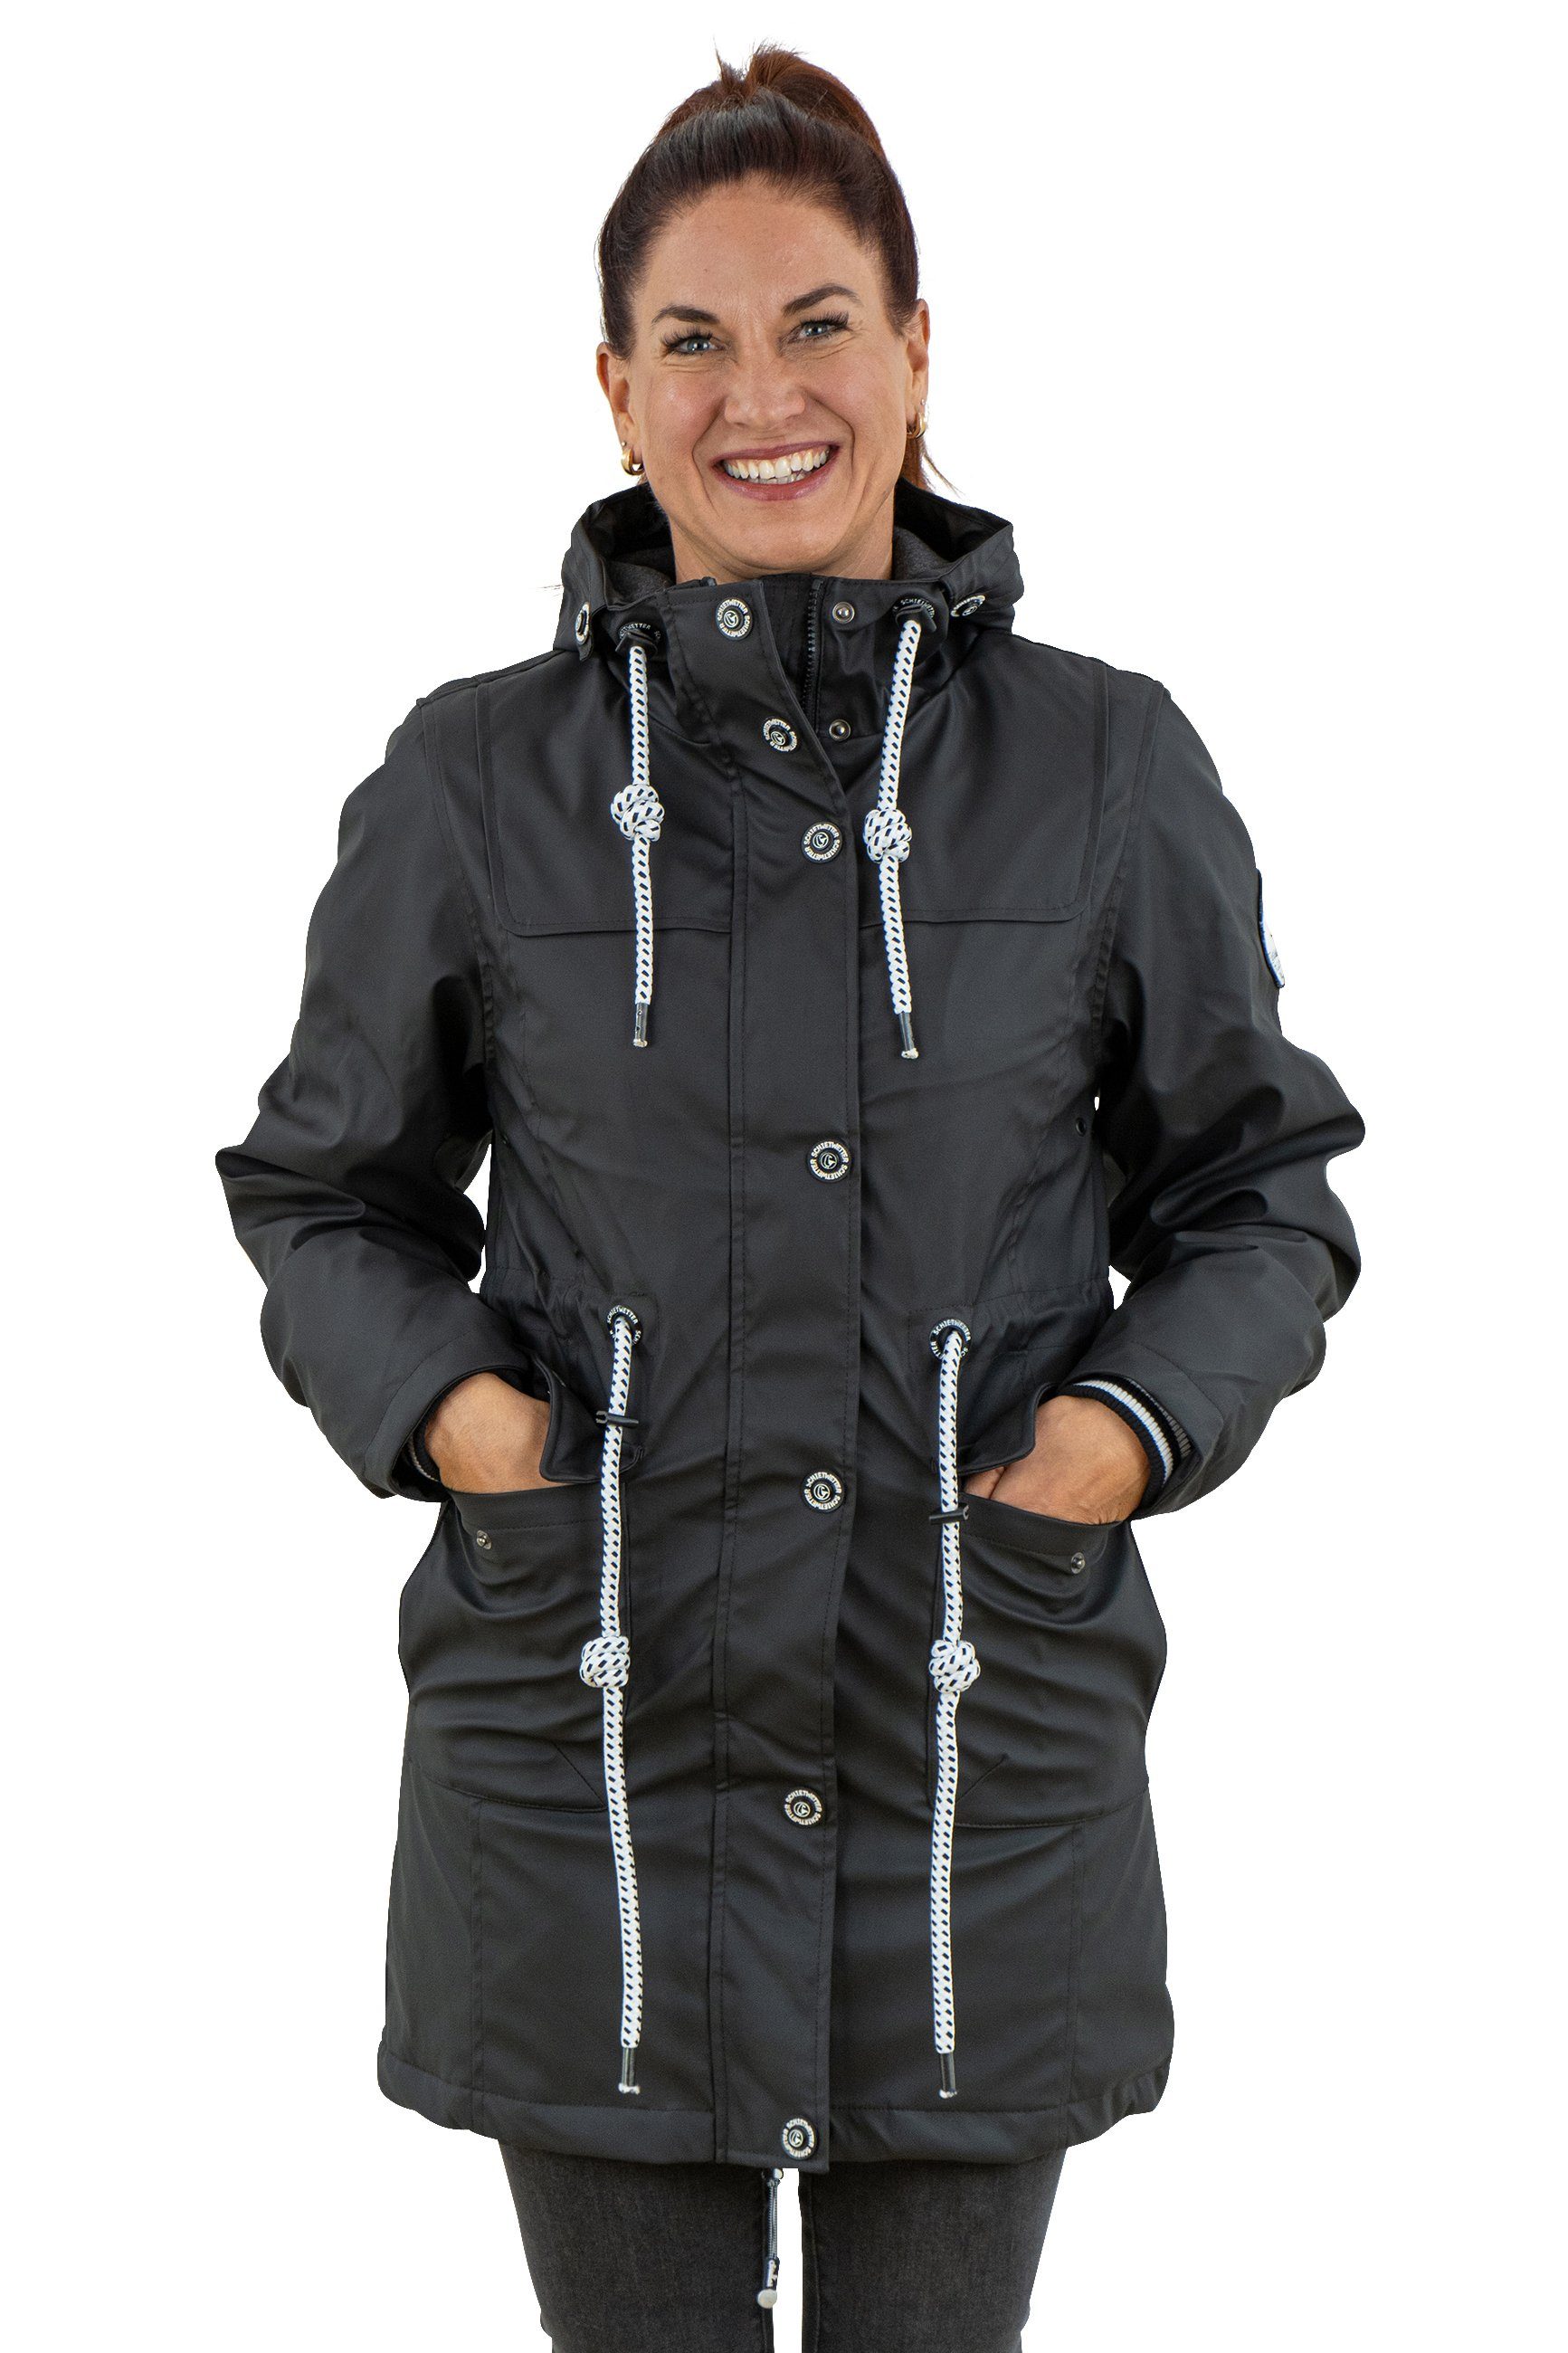 PEAK TIME Jacken für Damen online kaufen | OTTO